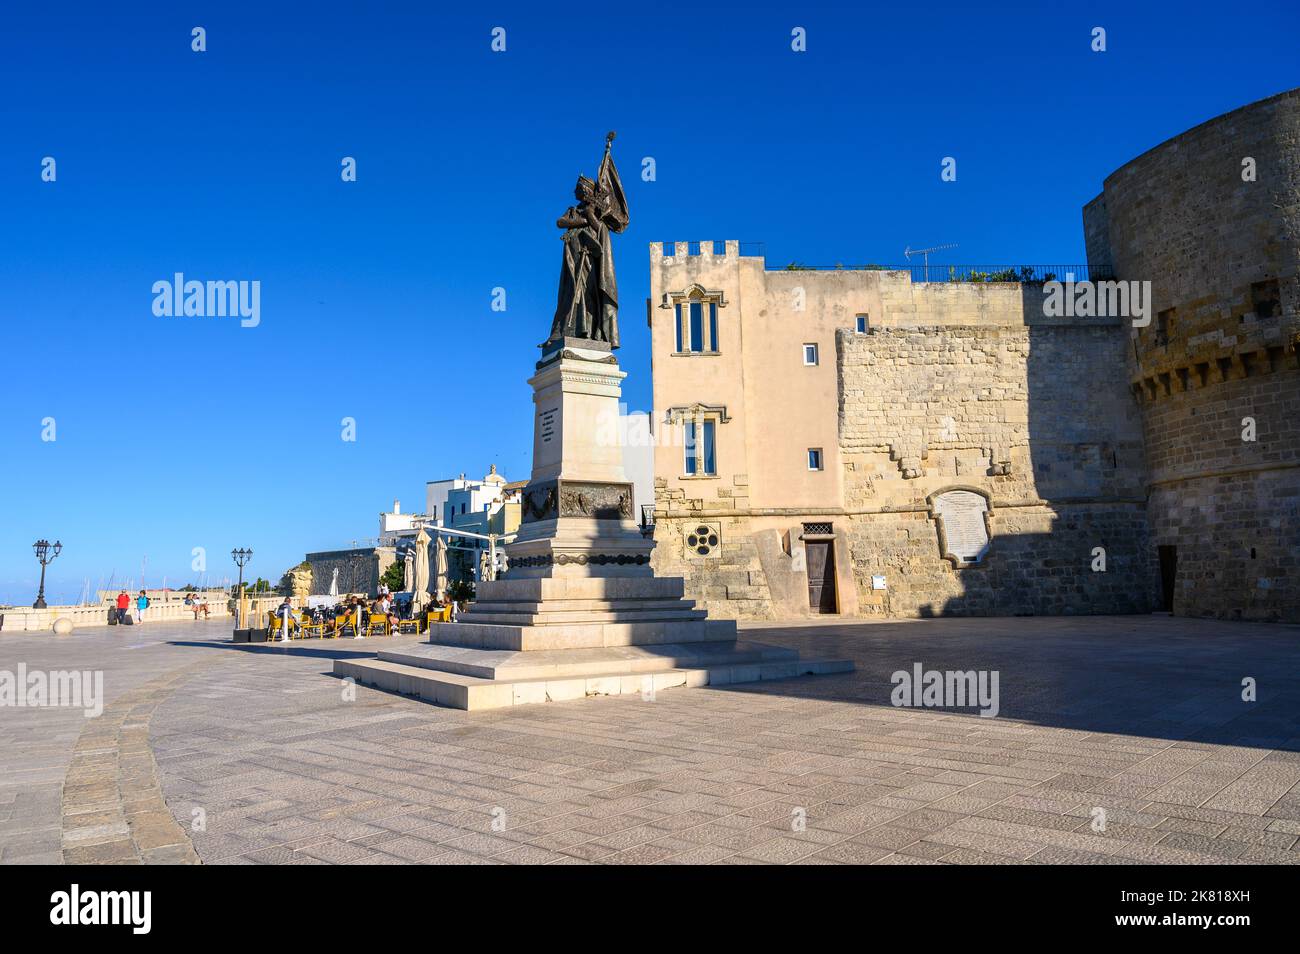 Monumento agli eroi e ai martiri di Otranto sulla piazza della passeggiata degli Eroi accanto alla torre Alfonsina di Otranto, Puglia. Foto Stock